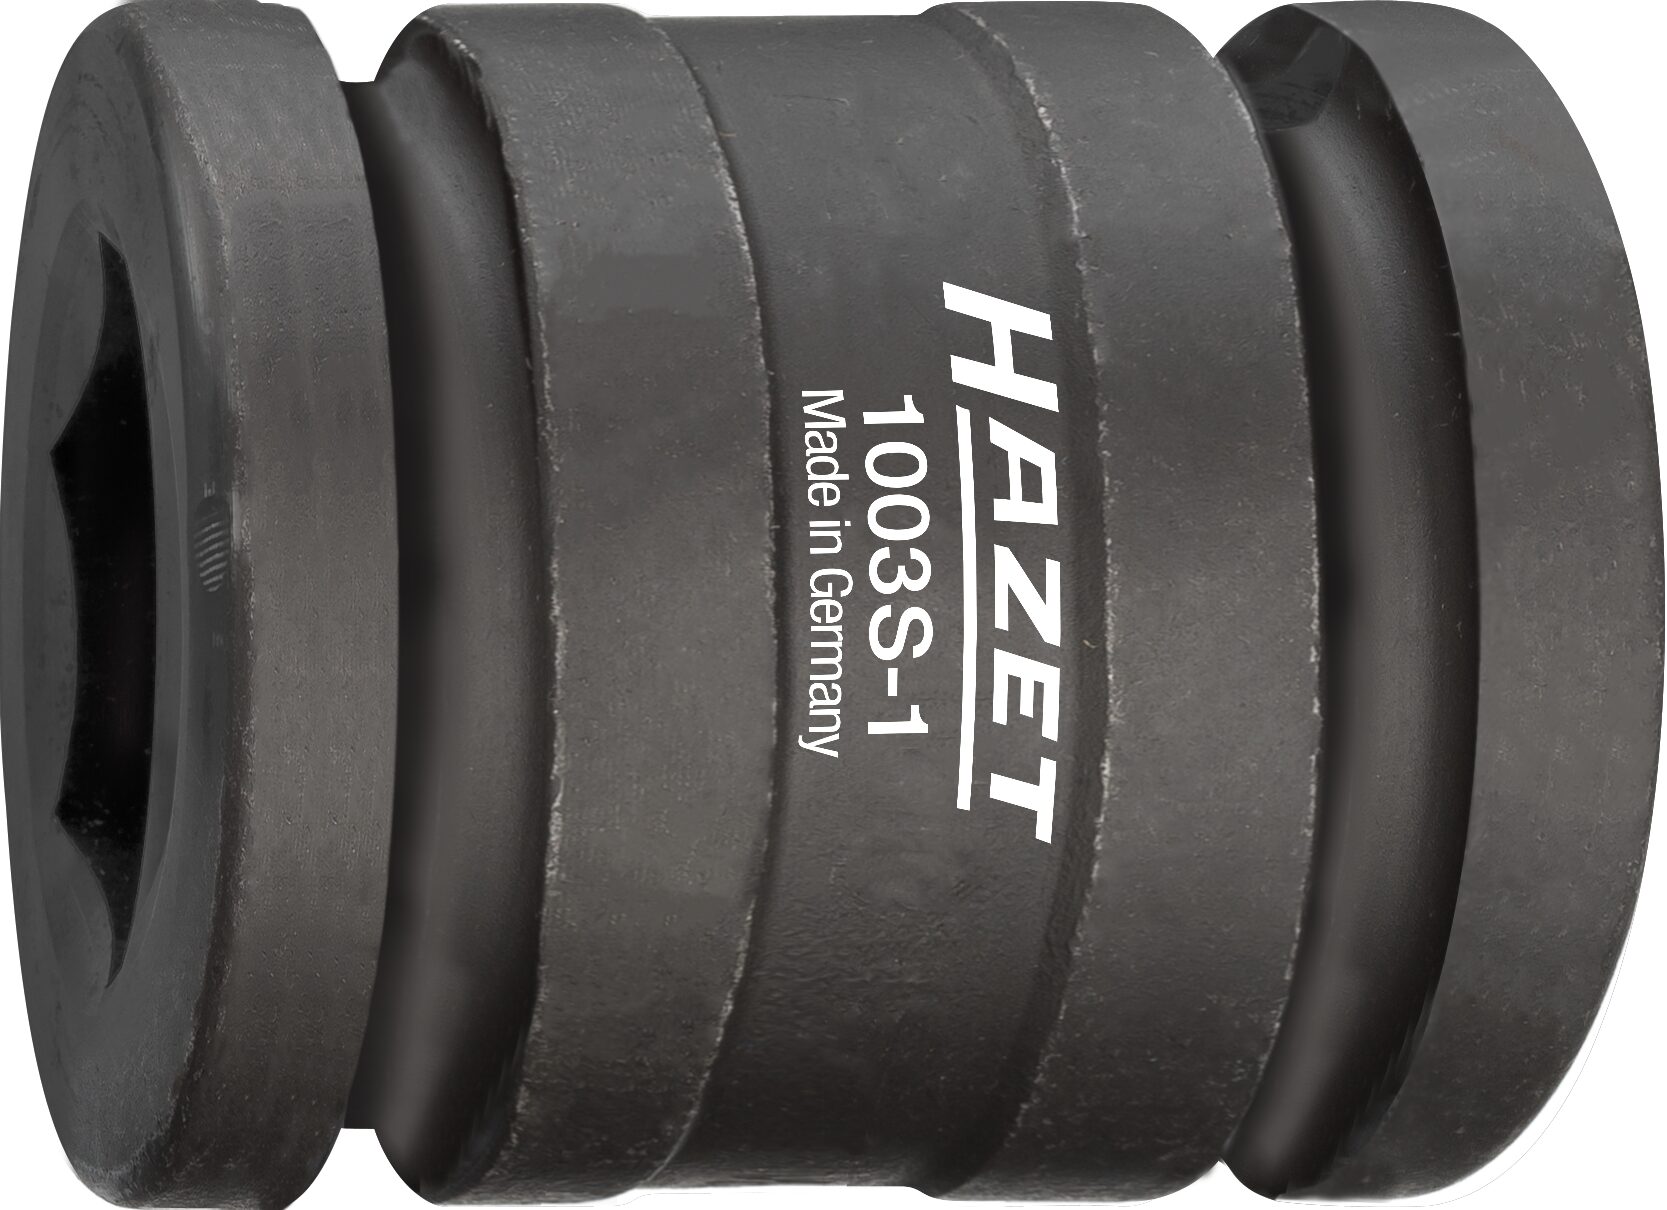 HAZET Schlag-, Maschinenschrauber Adapter 1003S-1 · Vierkant hohl 20 mm (3/4 Zoll) · Innen Sechskant Profil